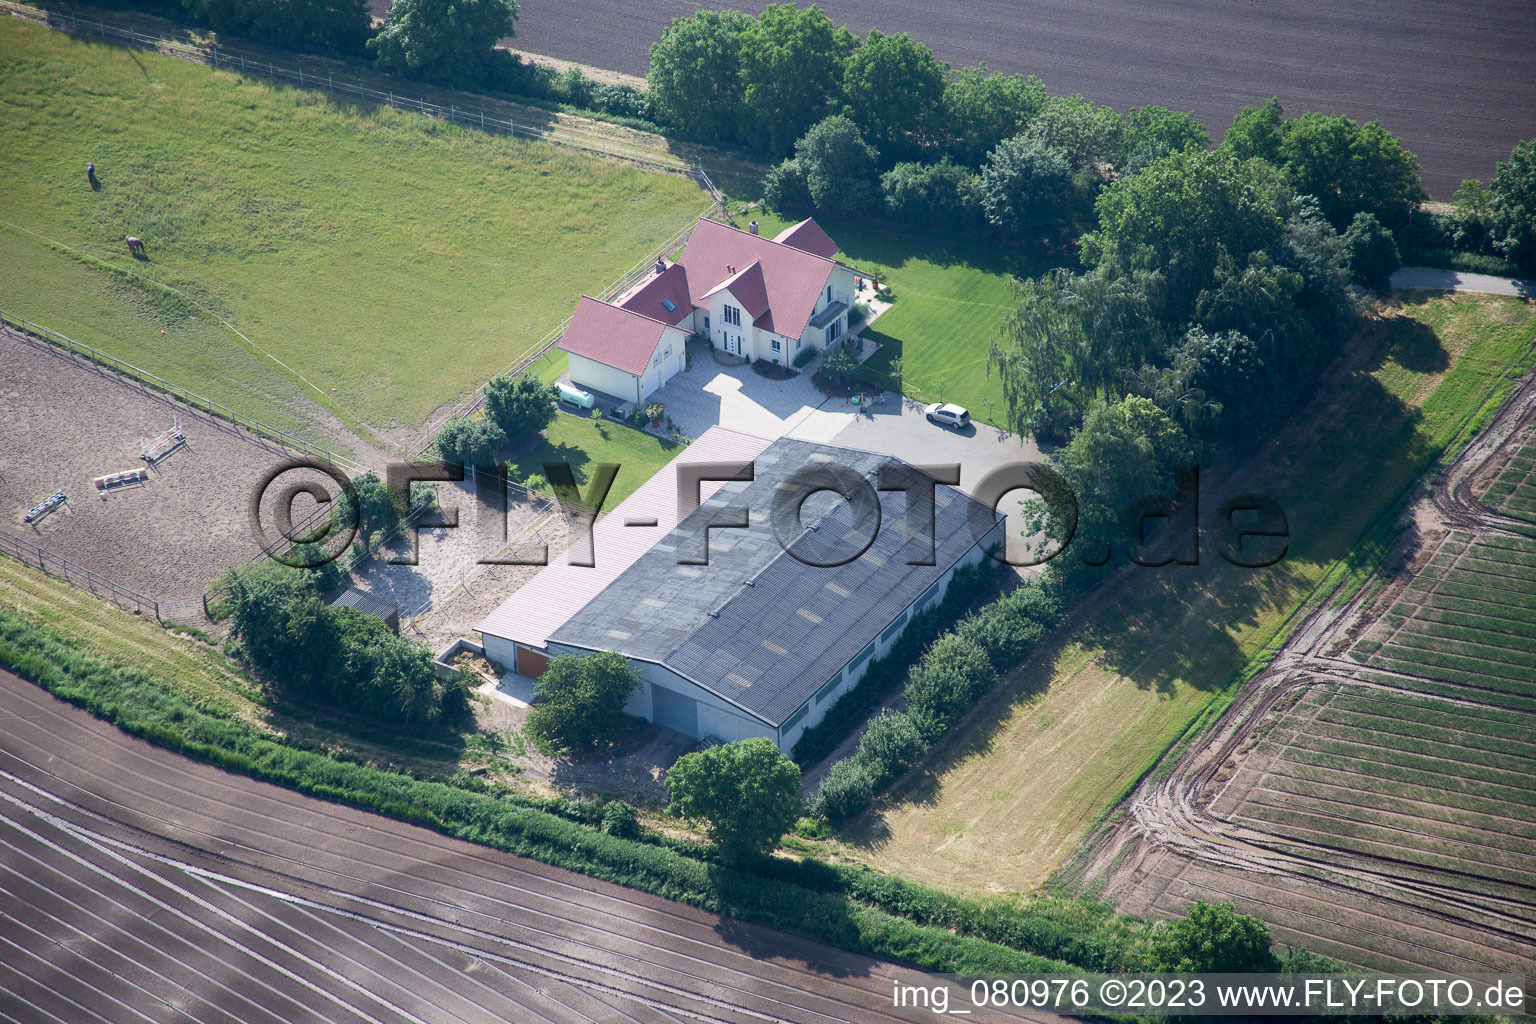 Zeiskam dans le département Rhénanie-Palatinat, Allemagne hors des airs